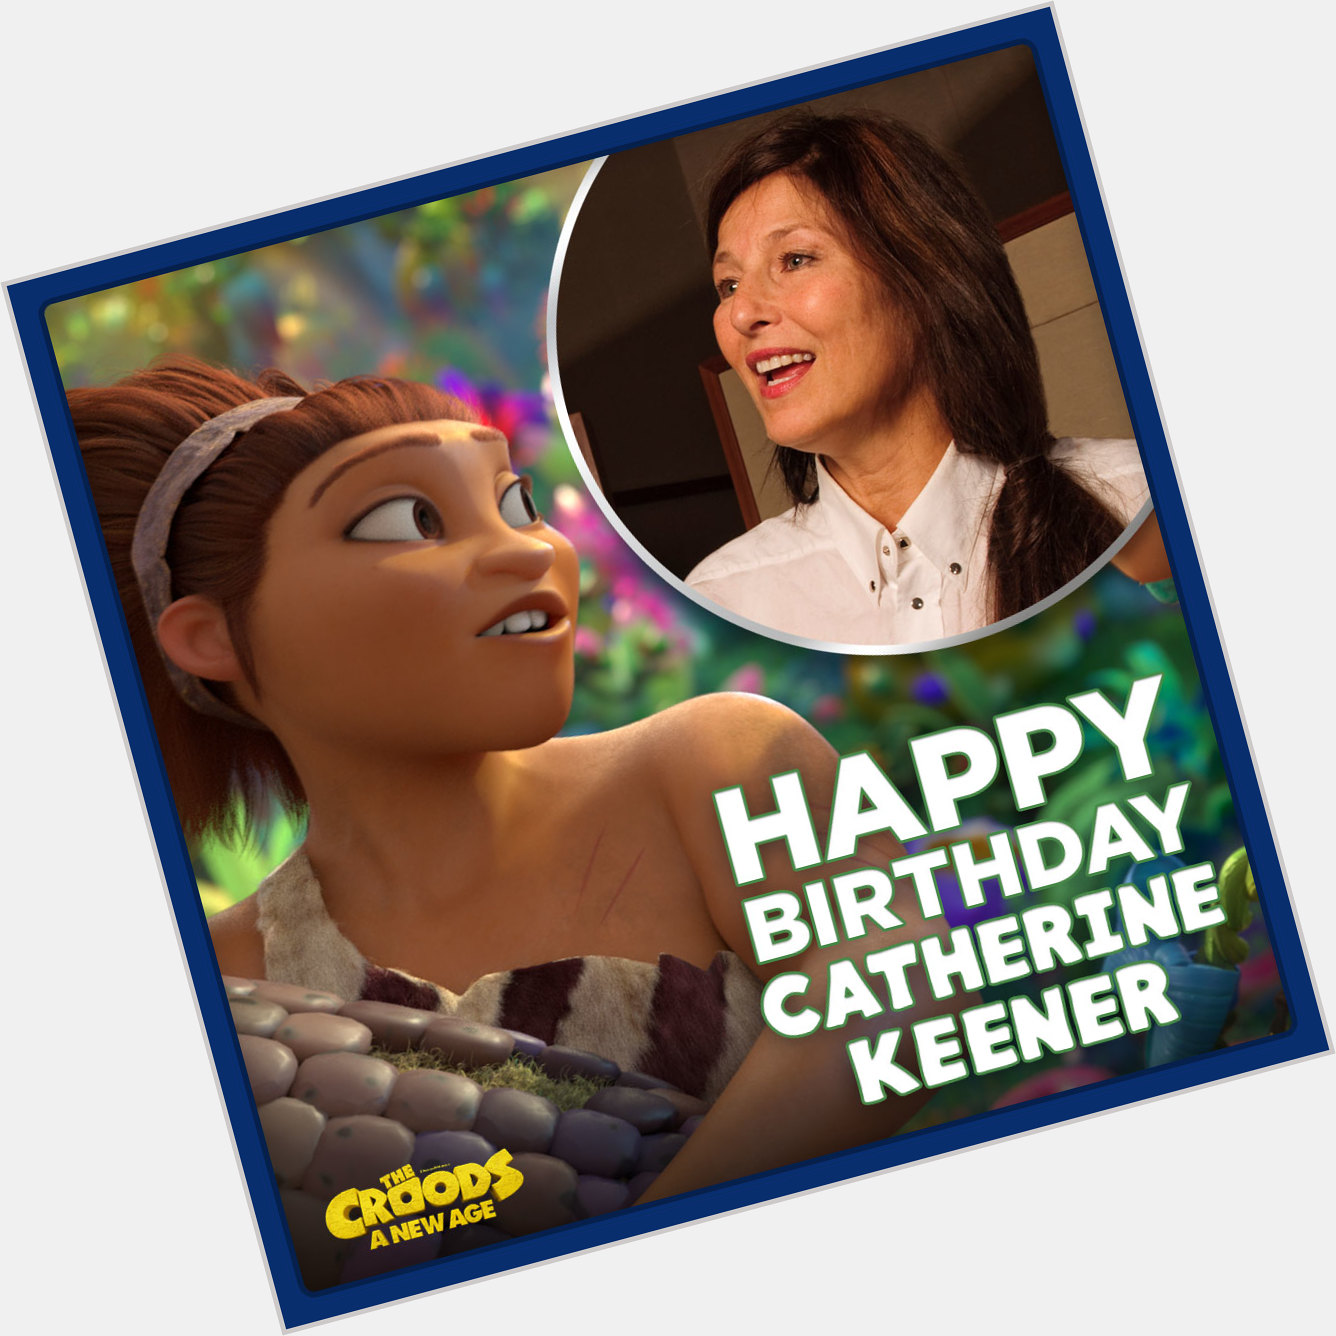 Happy birthday, Catherine Keener! 